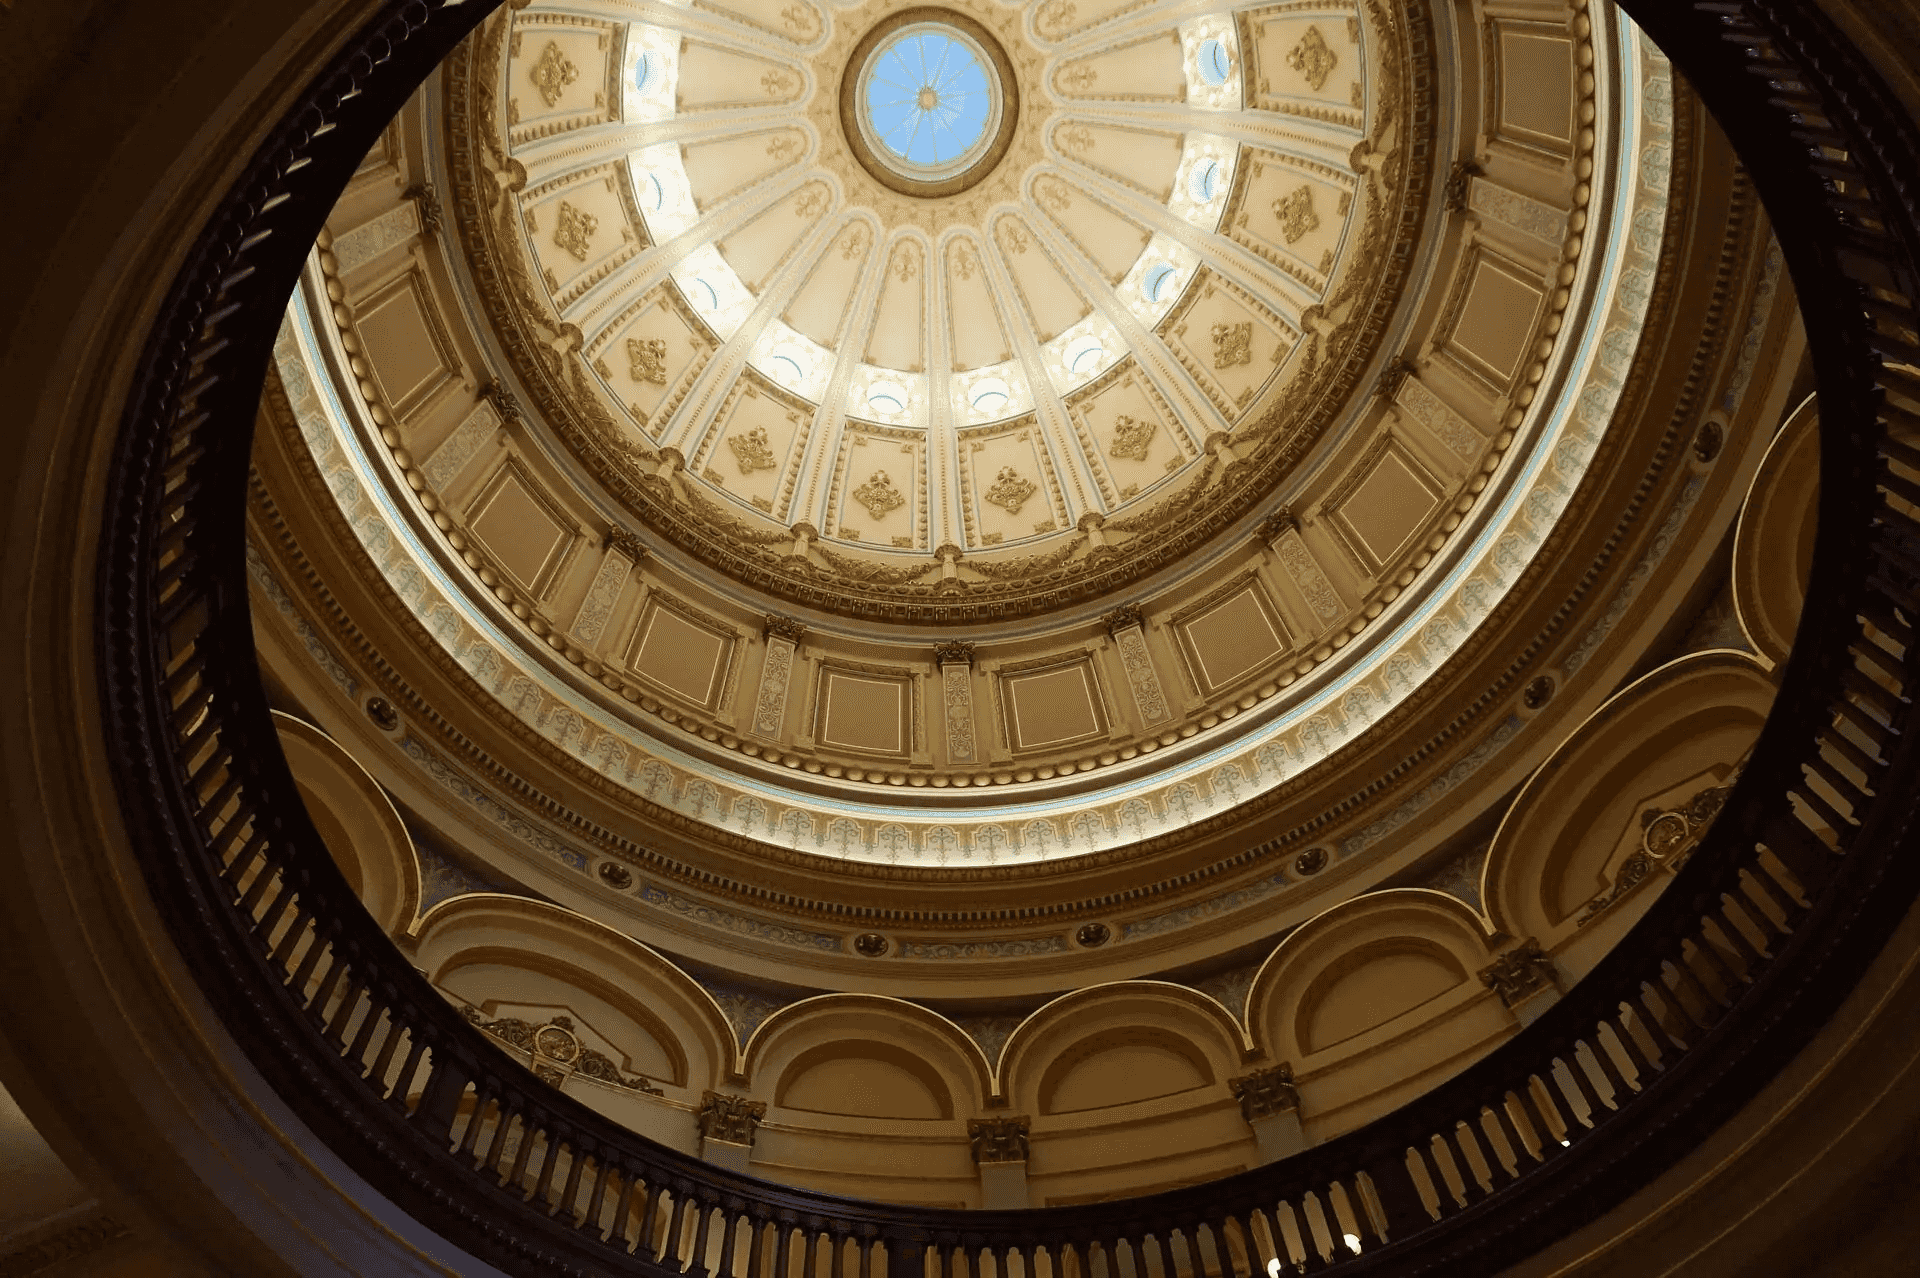 The Capitol dome's interior. Image by Ravi Krishnappa.